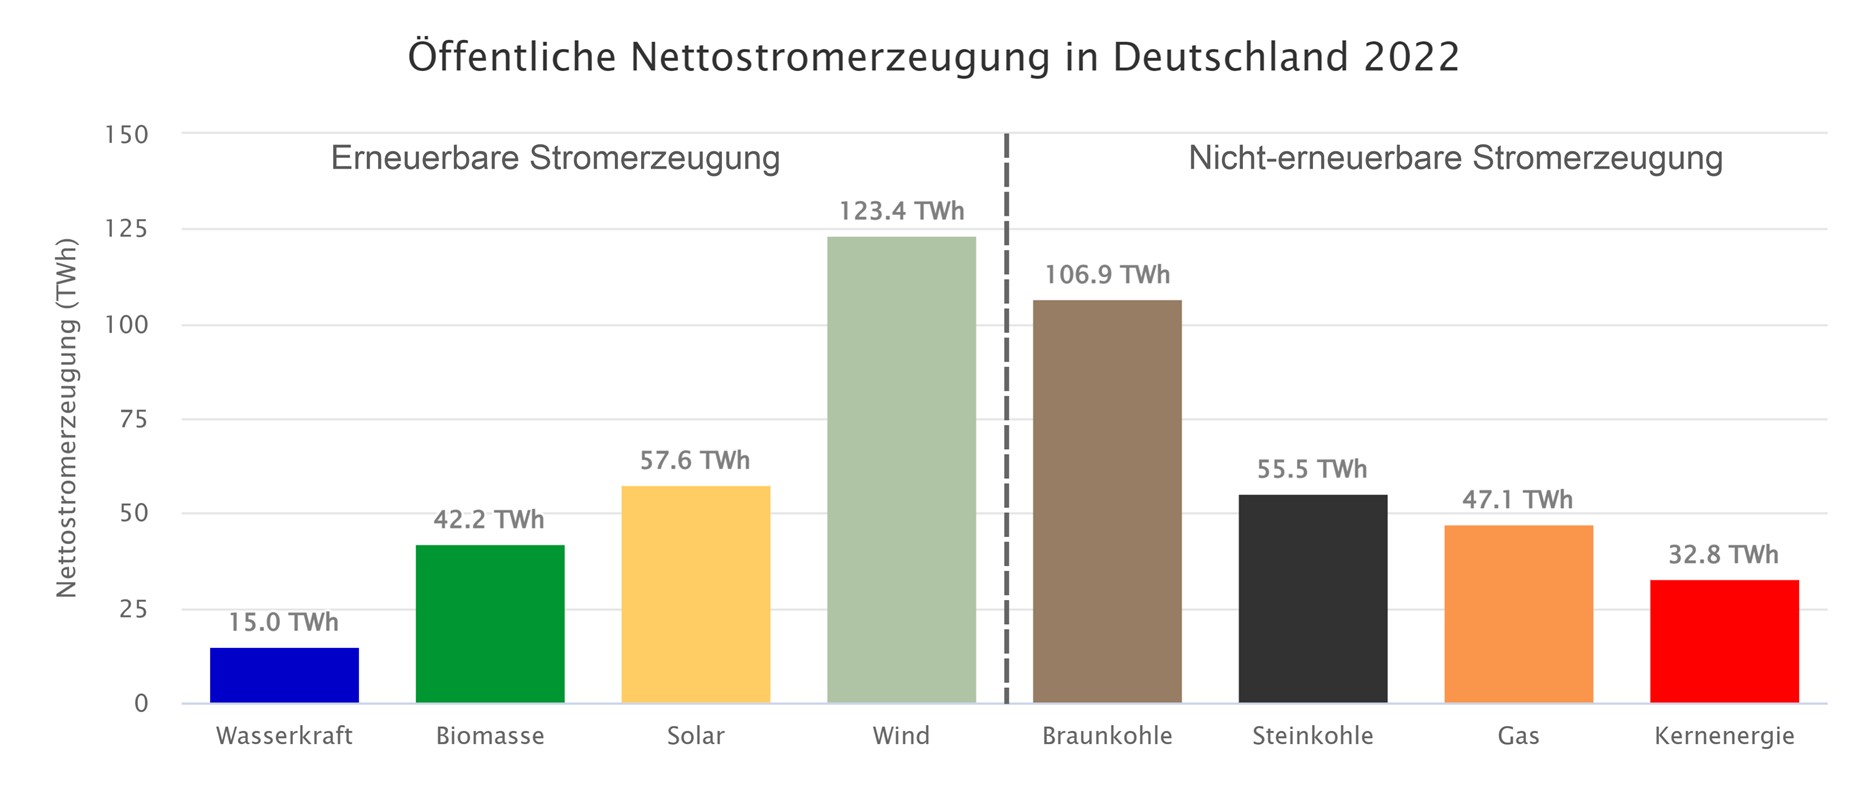 Die Grafik zeigt die Nettostromerzeugung aus Kraftwerken zur öffentlichen Stromversorgung